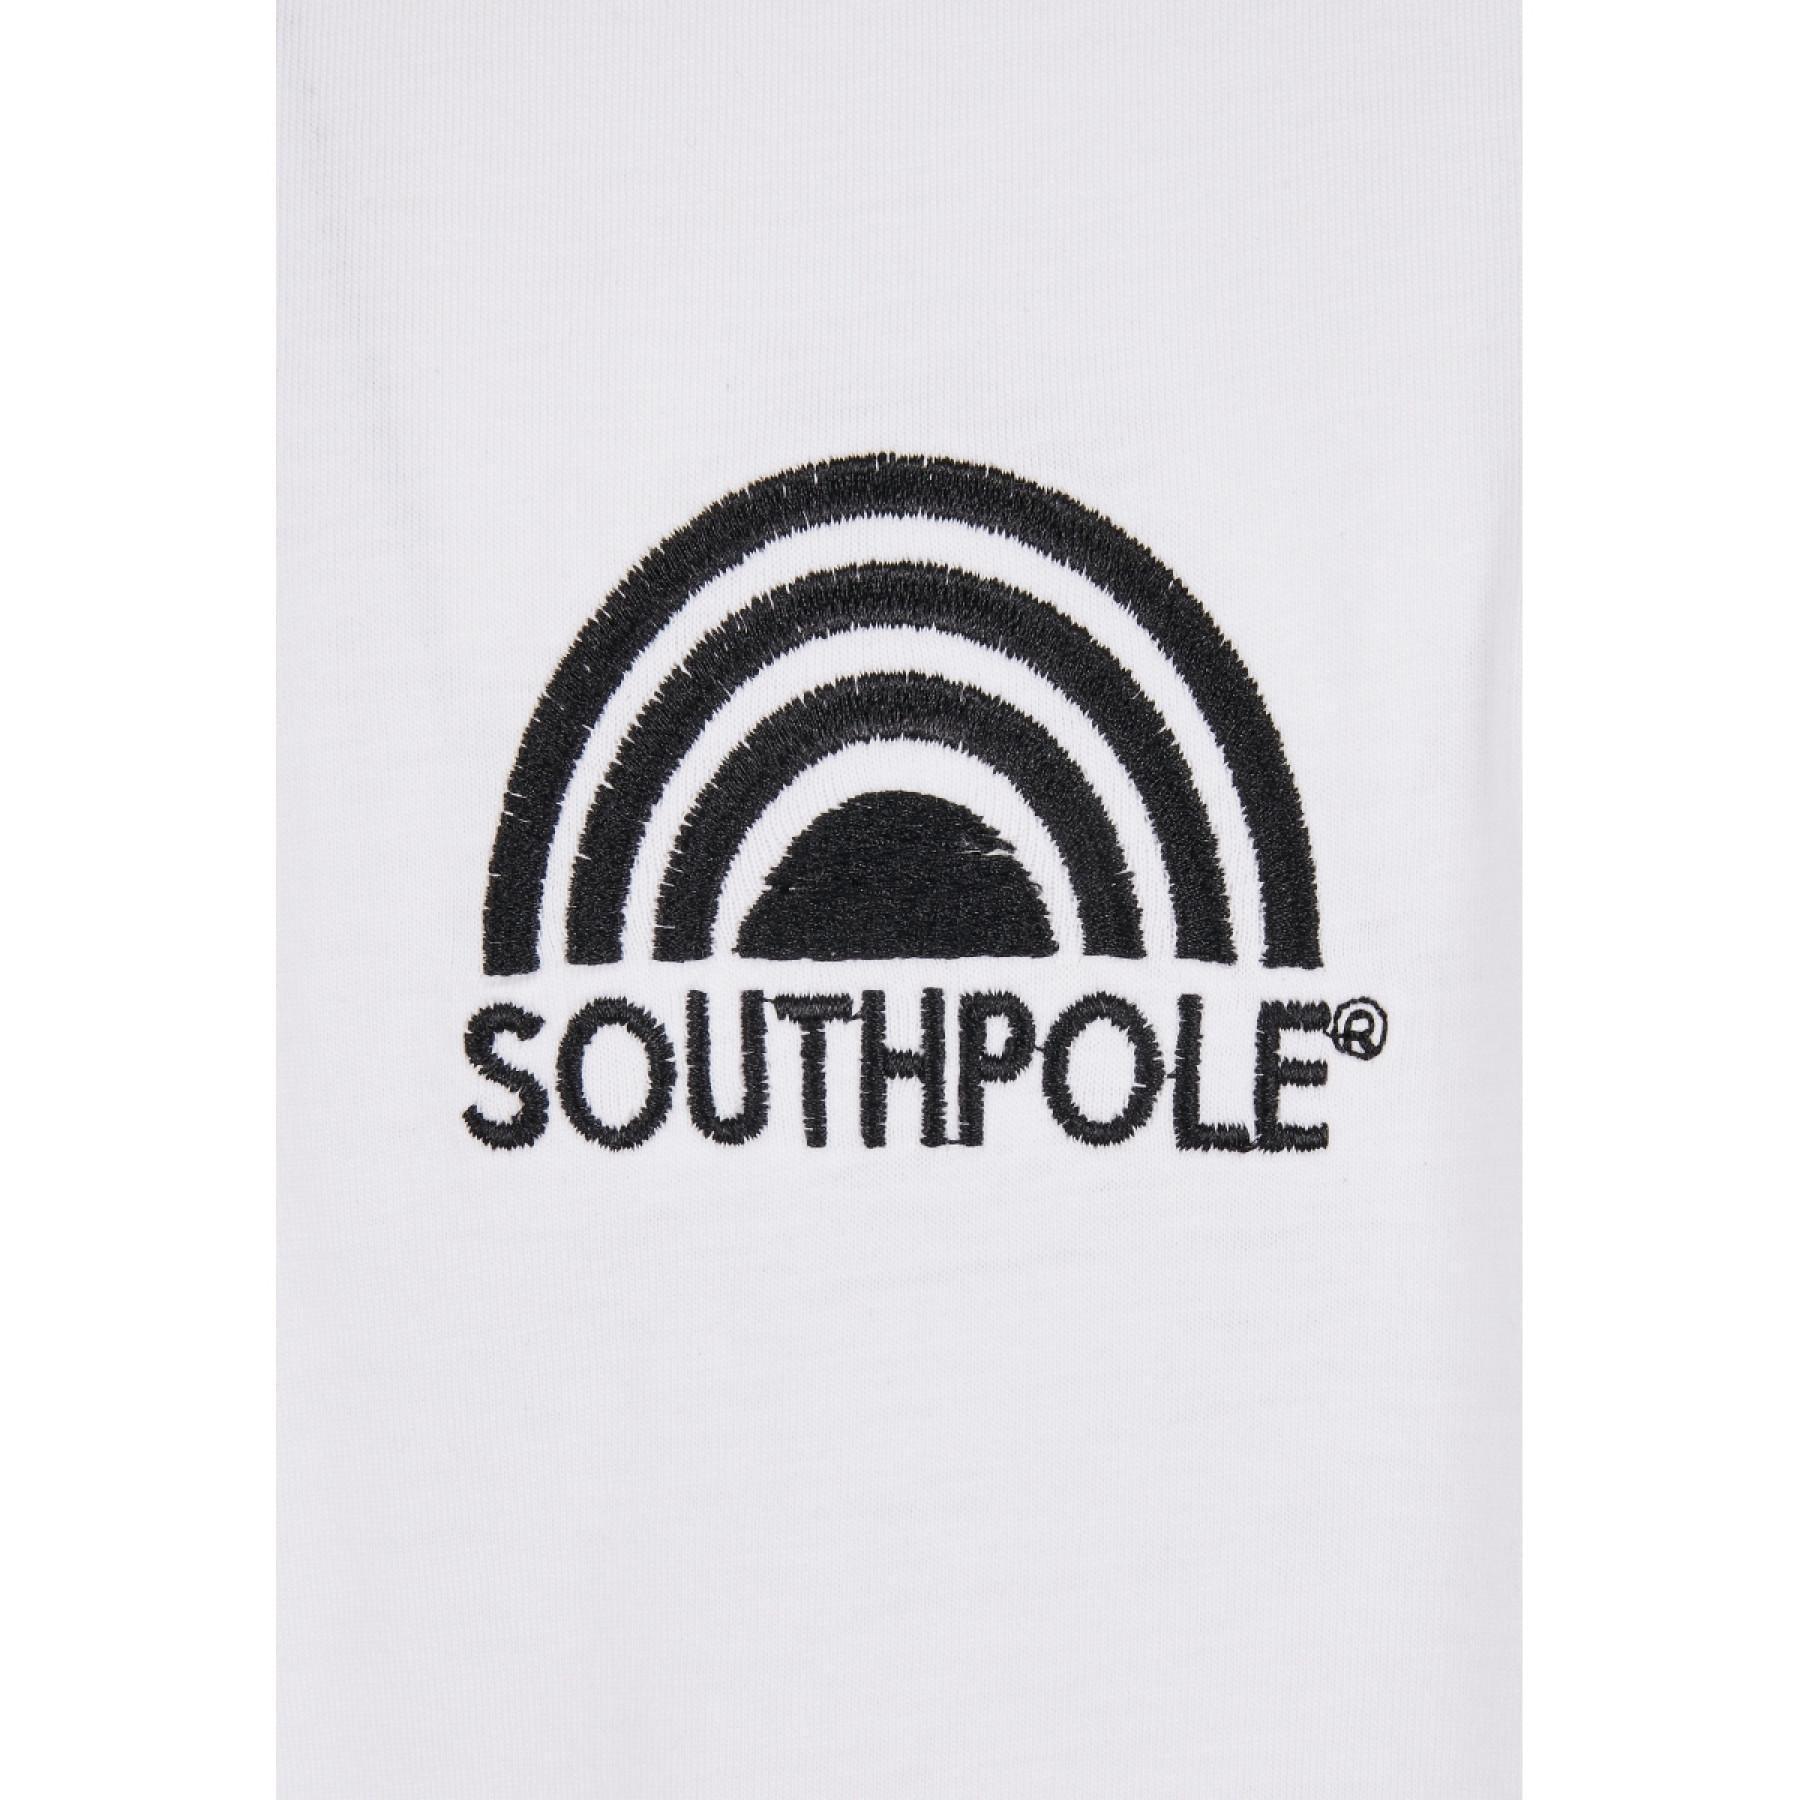 T-shirt Southpole basic manga dupla